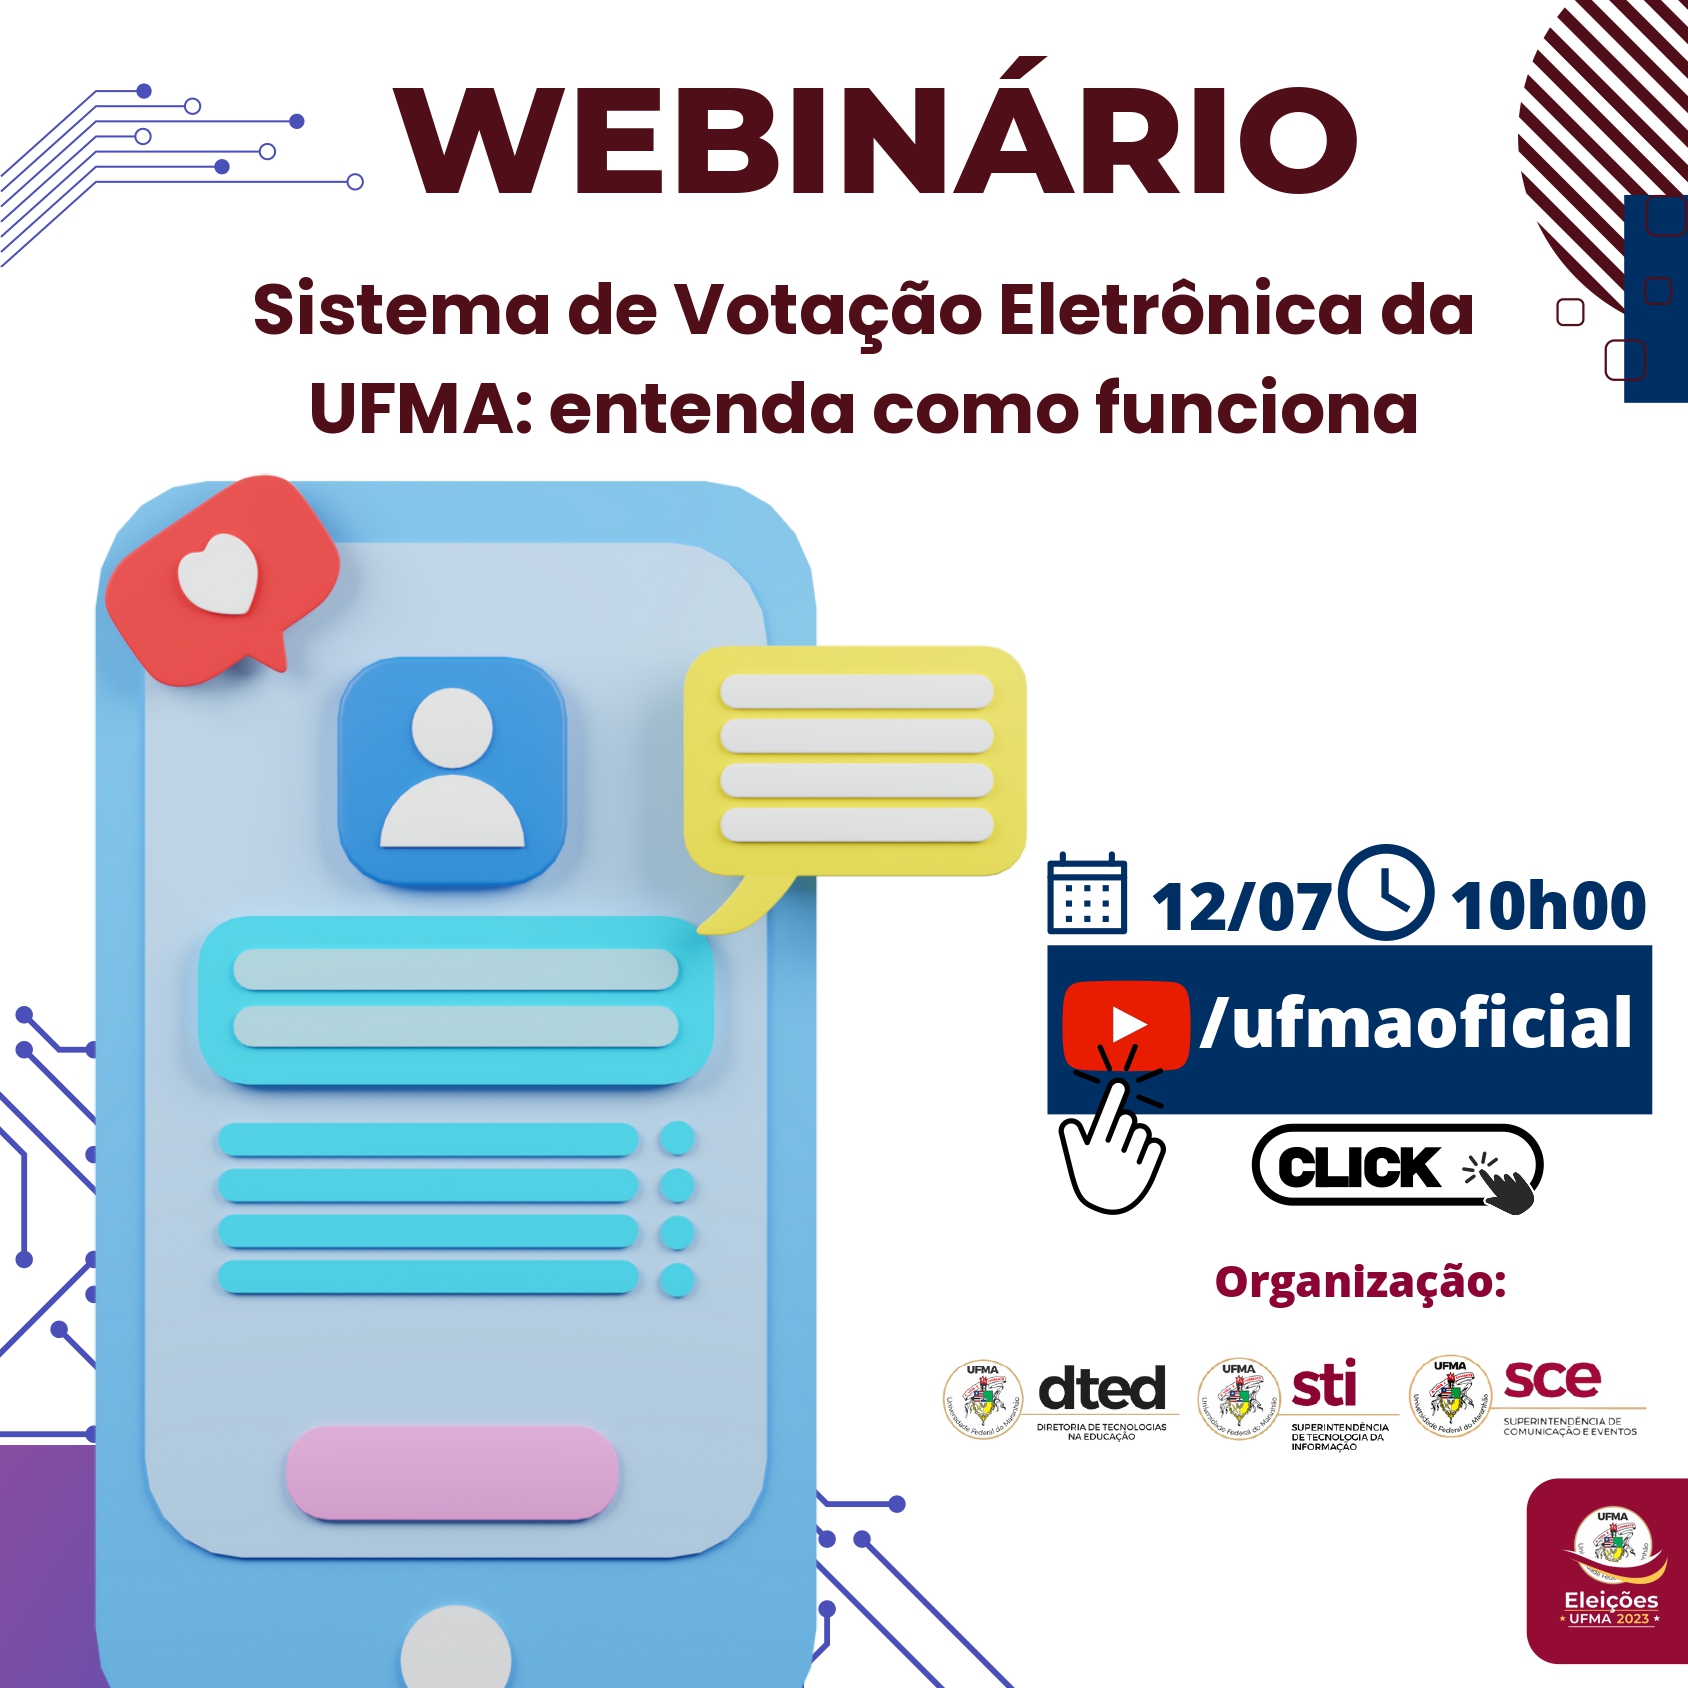 Webinário sobre sistema de votação ocorrerá nessa quarta-feira, 12, a partir de 10h, via Canal Institucional da UFMA no Youtube